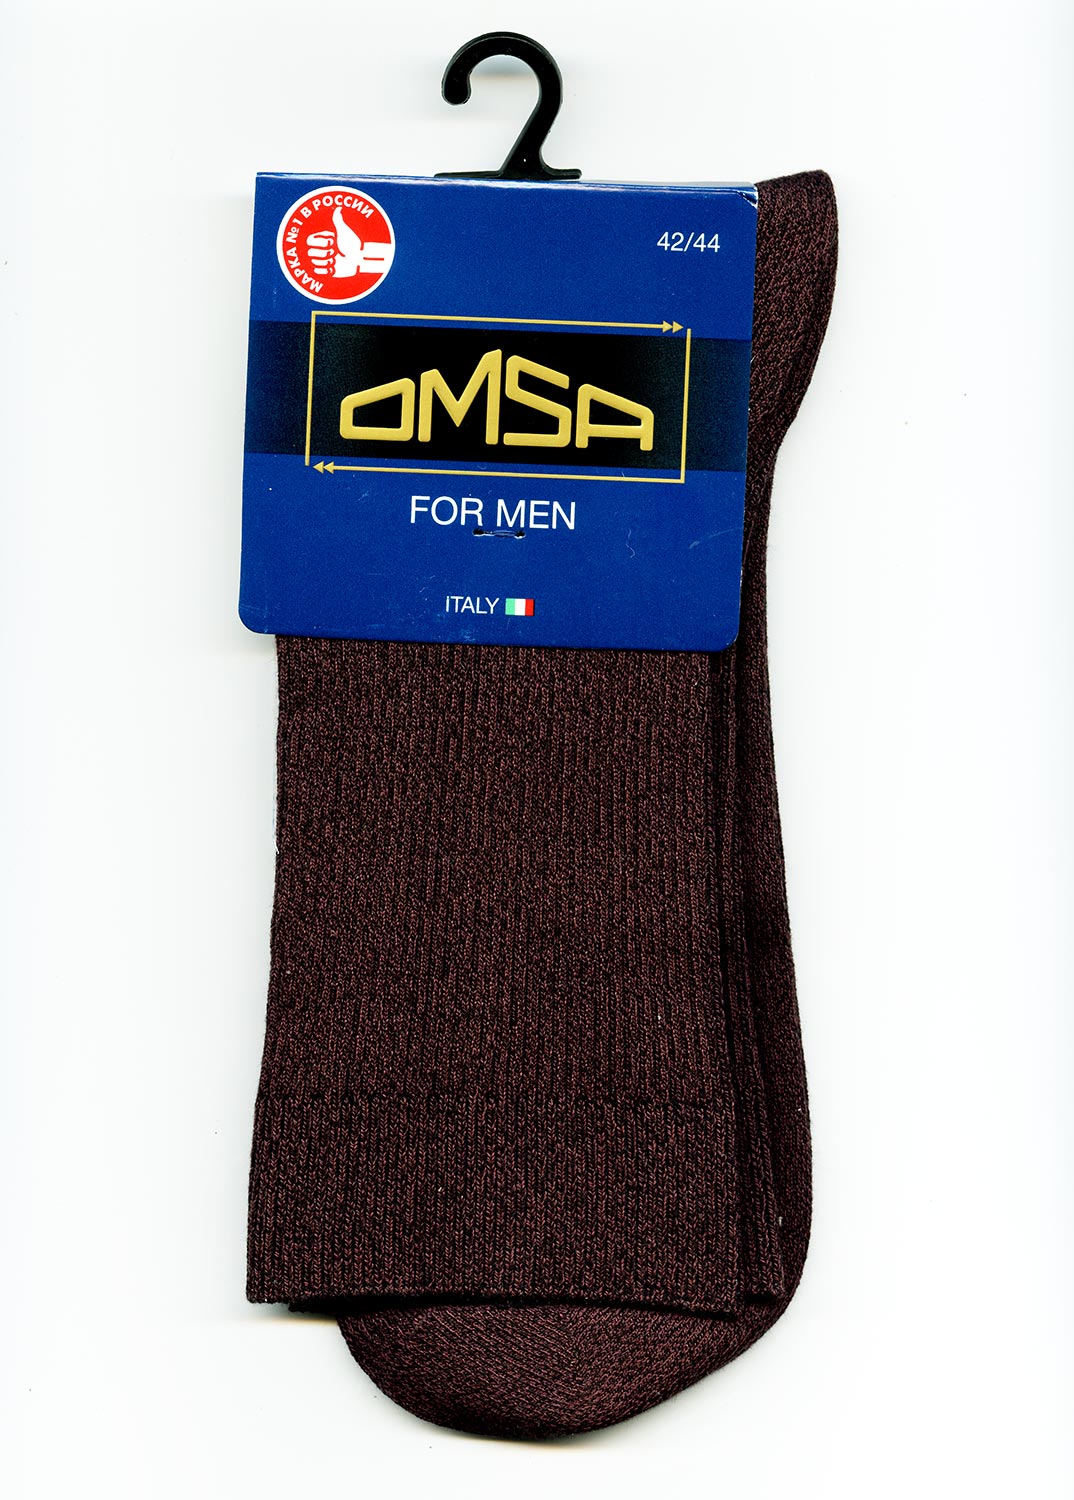 Дежурные мужские носки в рубчик Omsa 301 Comfort цвета Moka Melange (мока меланж) ©bracatuS